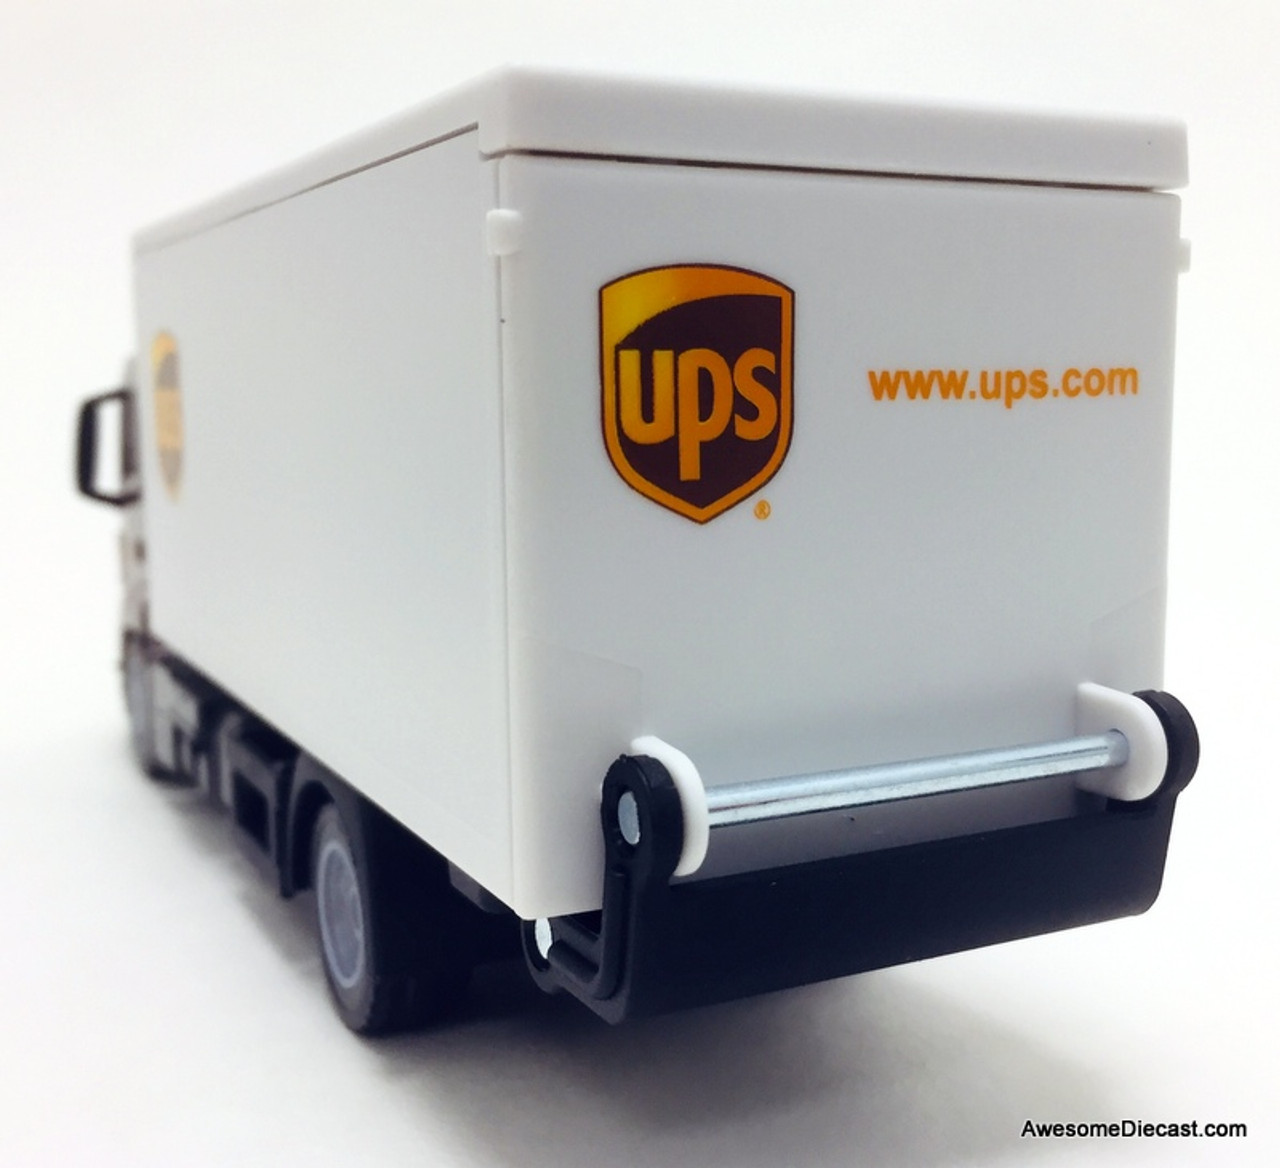 Siku 1:50 Man LKW Box Truck With Tail Lift: UPS Parcel Service